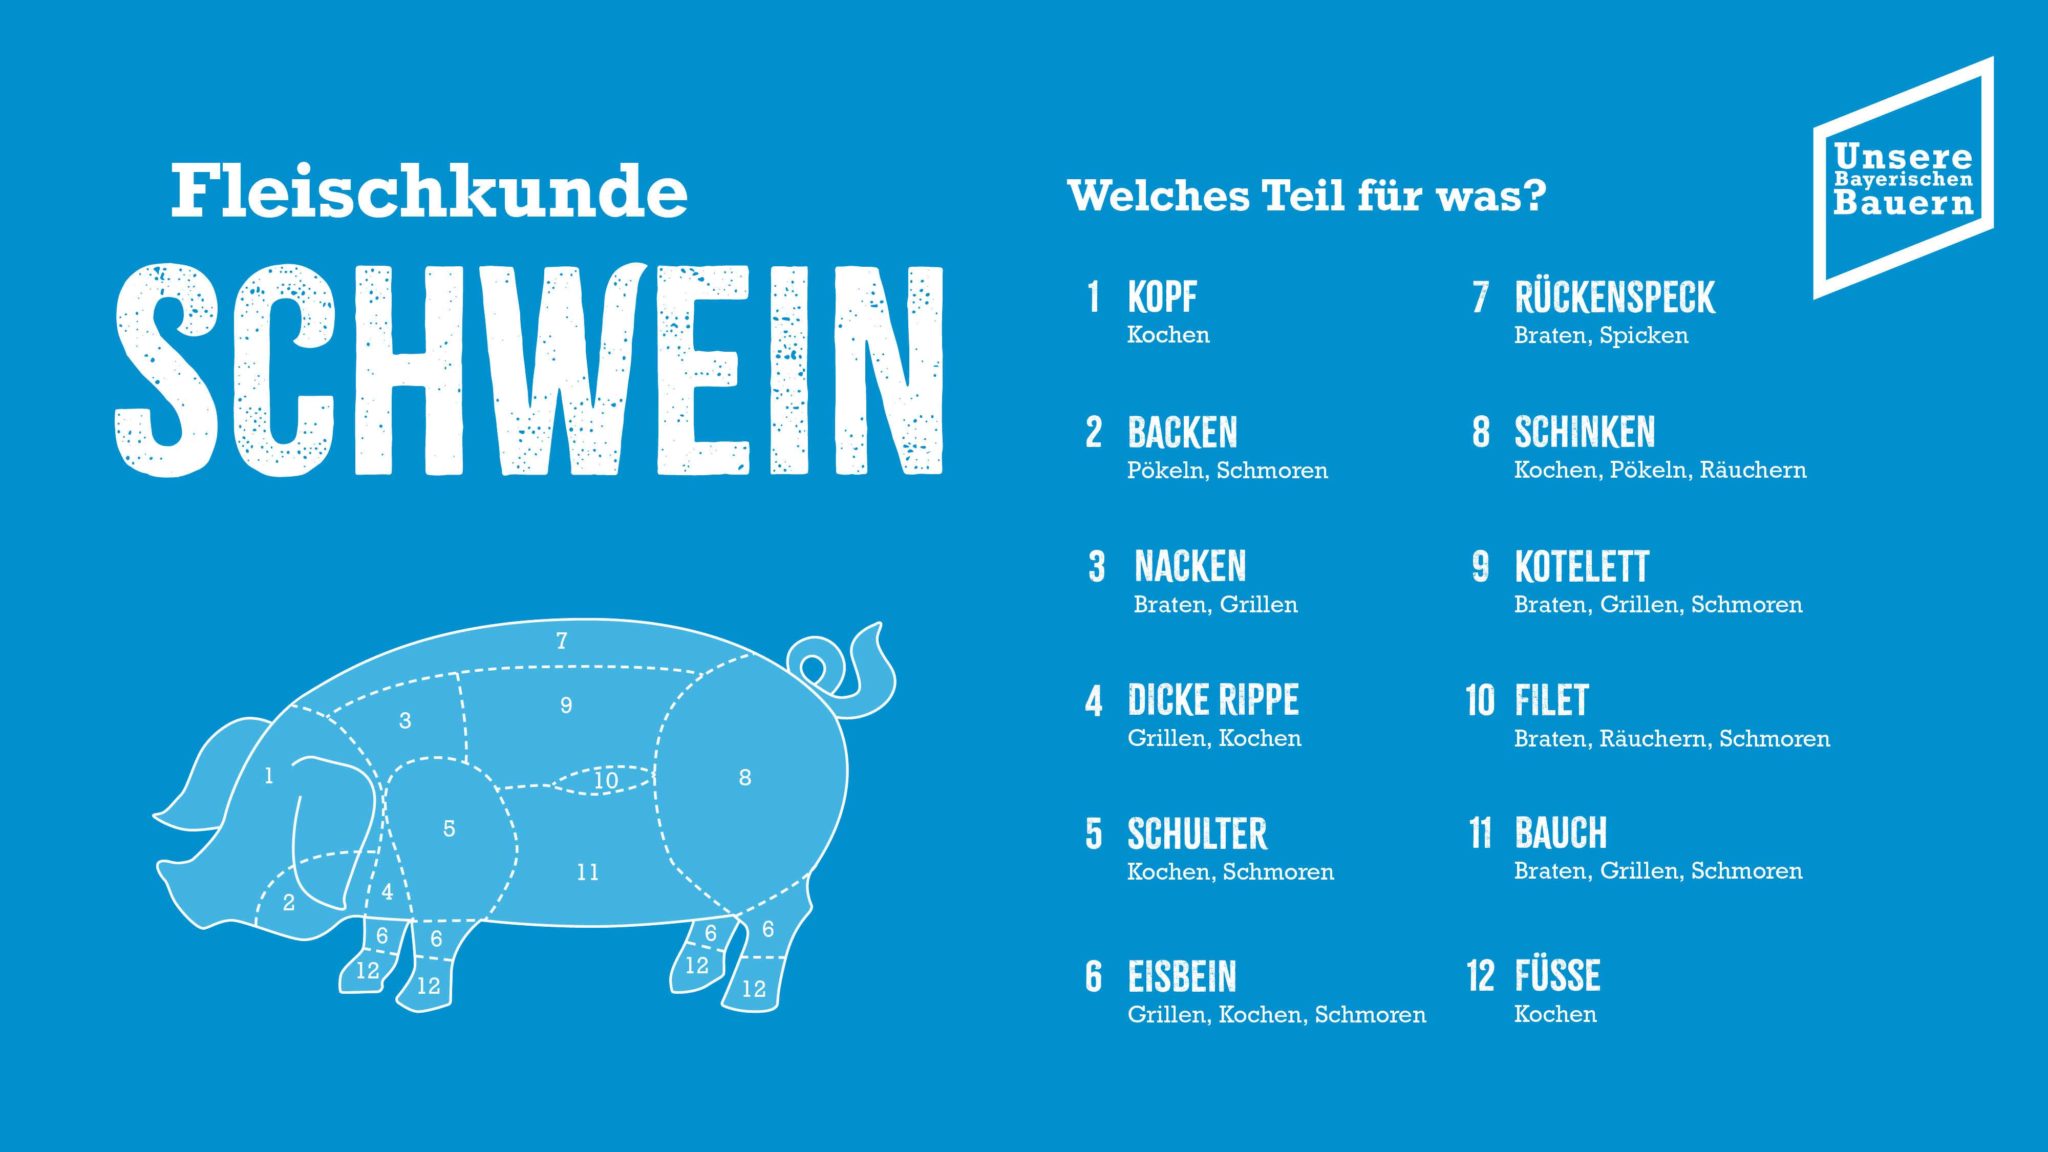 Schweinefleisch genießen Unsere Bayerischen Bauern